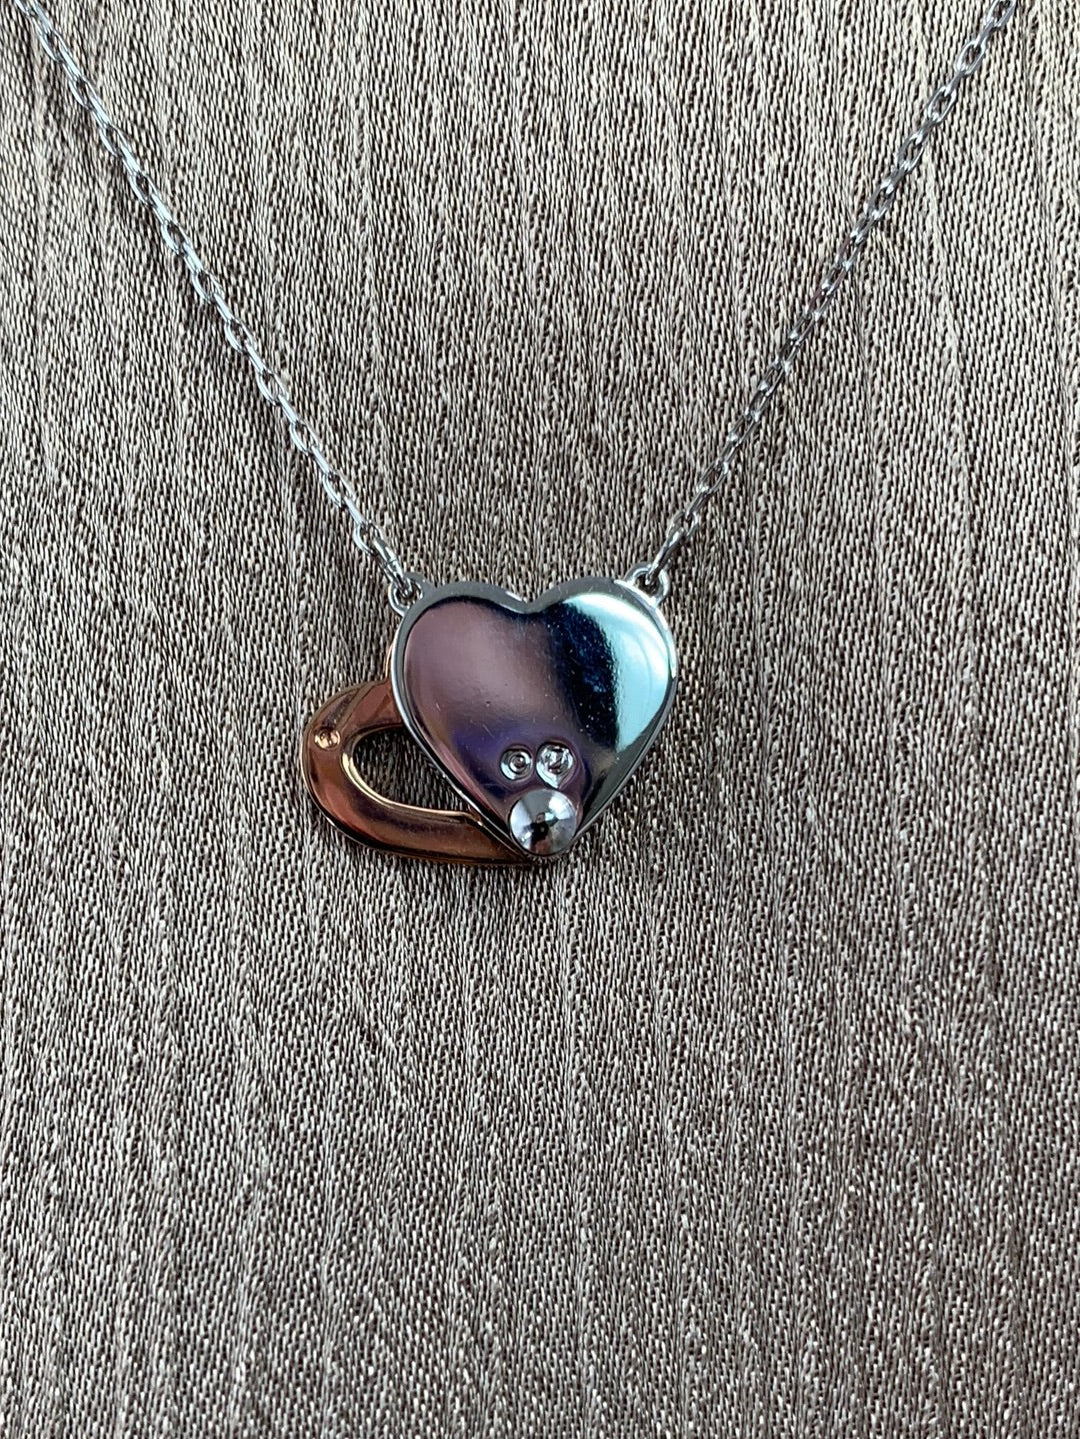 SWAROVSKI silver tone & gold tone Double Heart Necklace - 14.75" - 16.5"